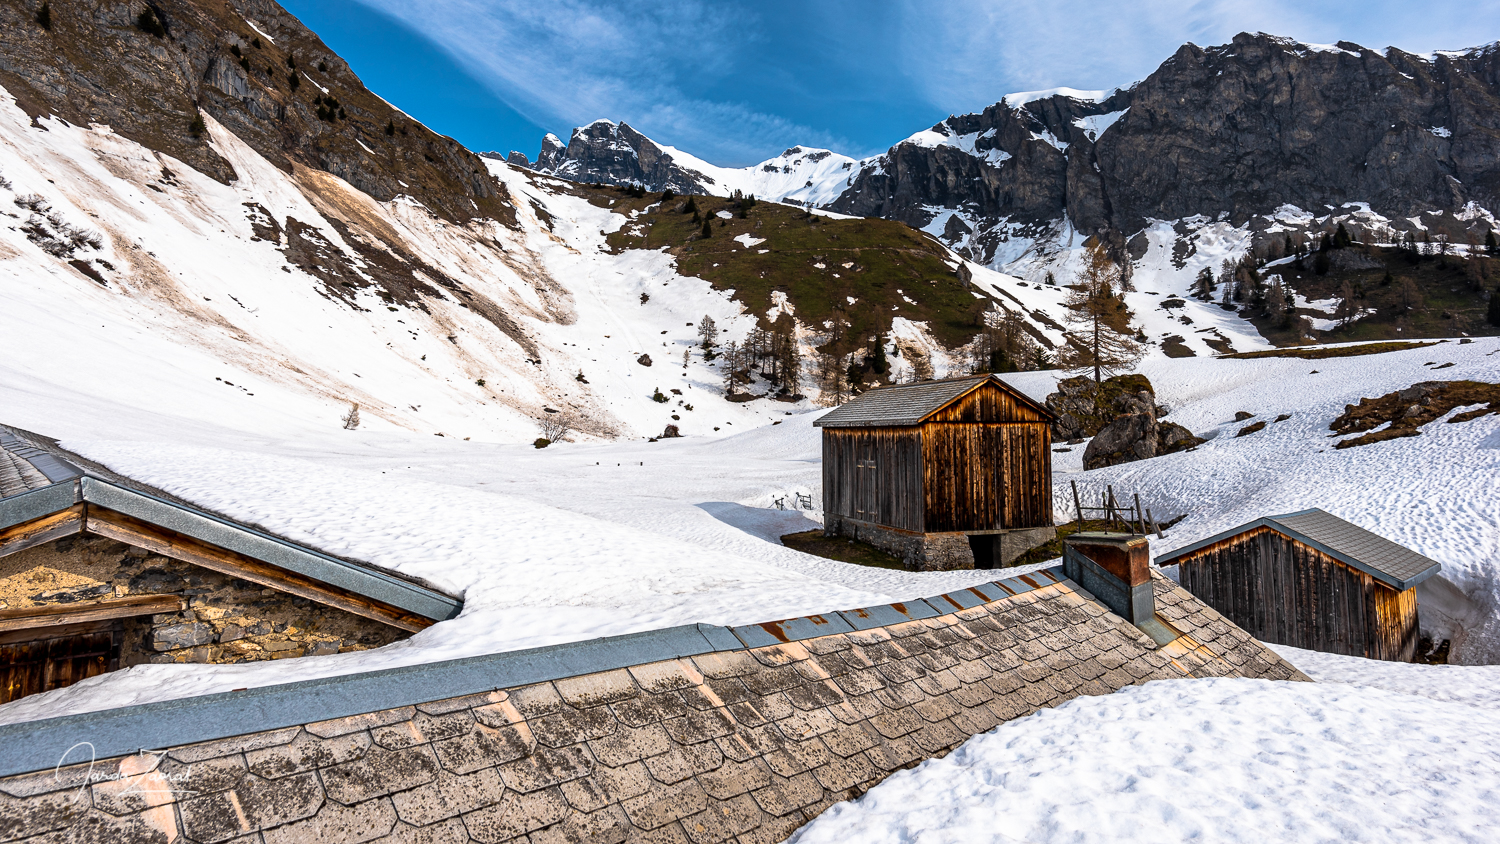 Swiss Alps and Fläscher Alp in winter